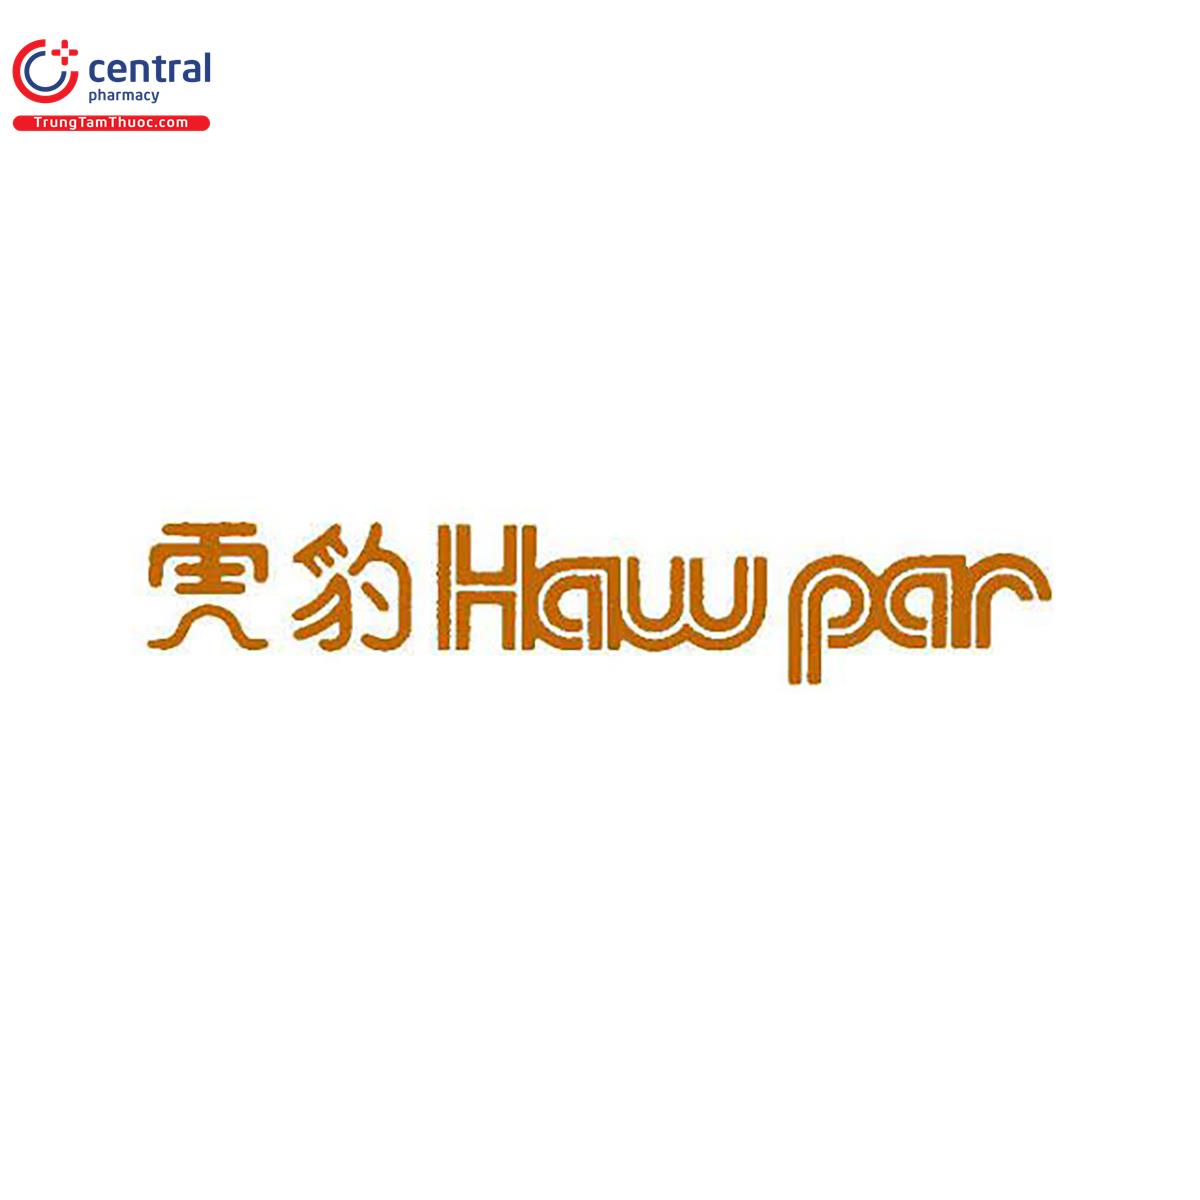 Haw Par Corporation Limited